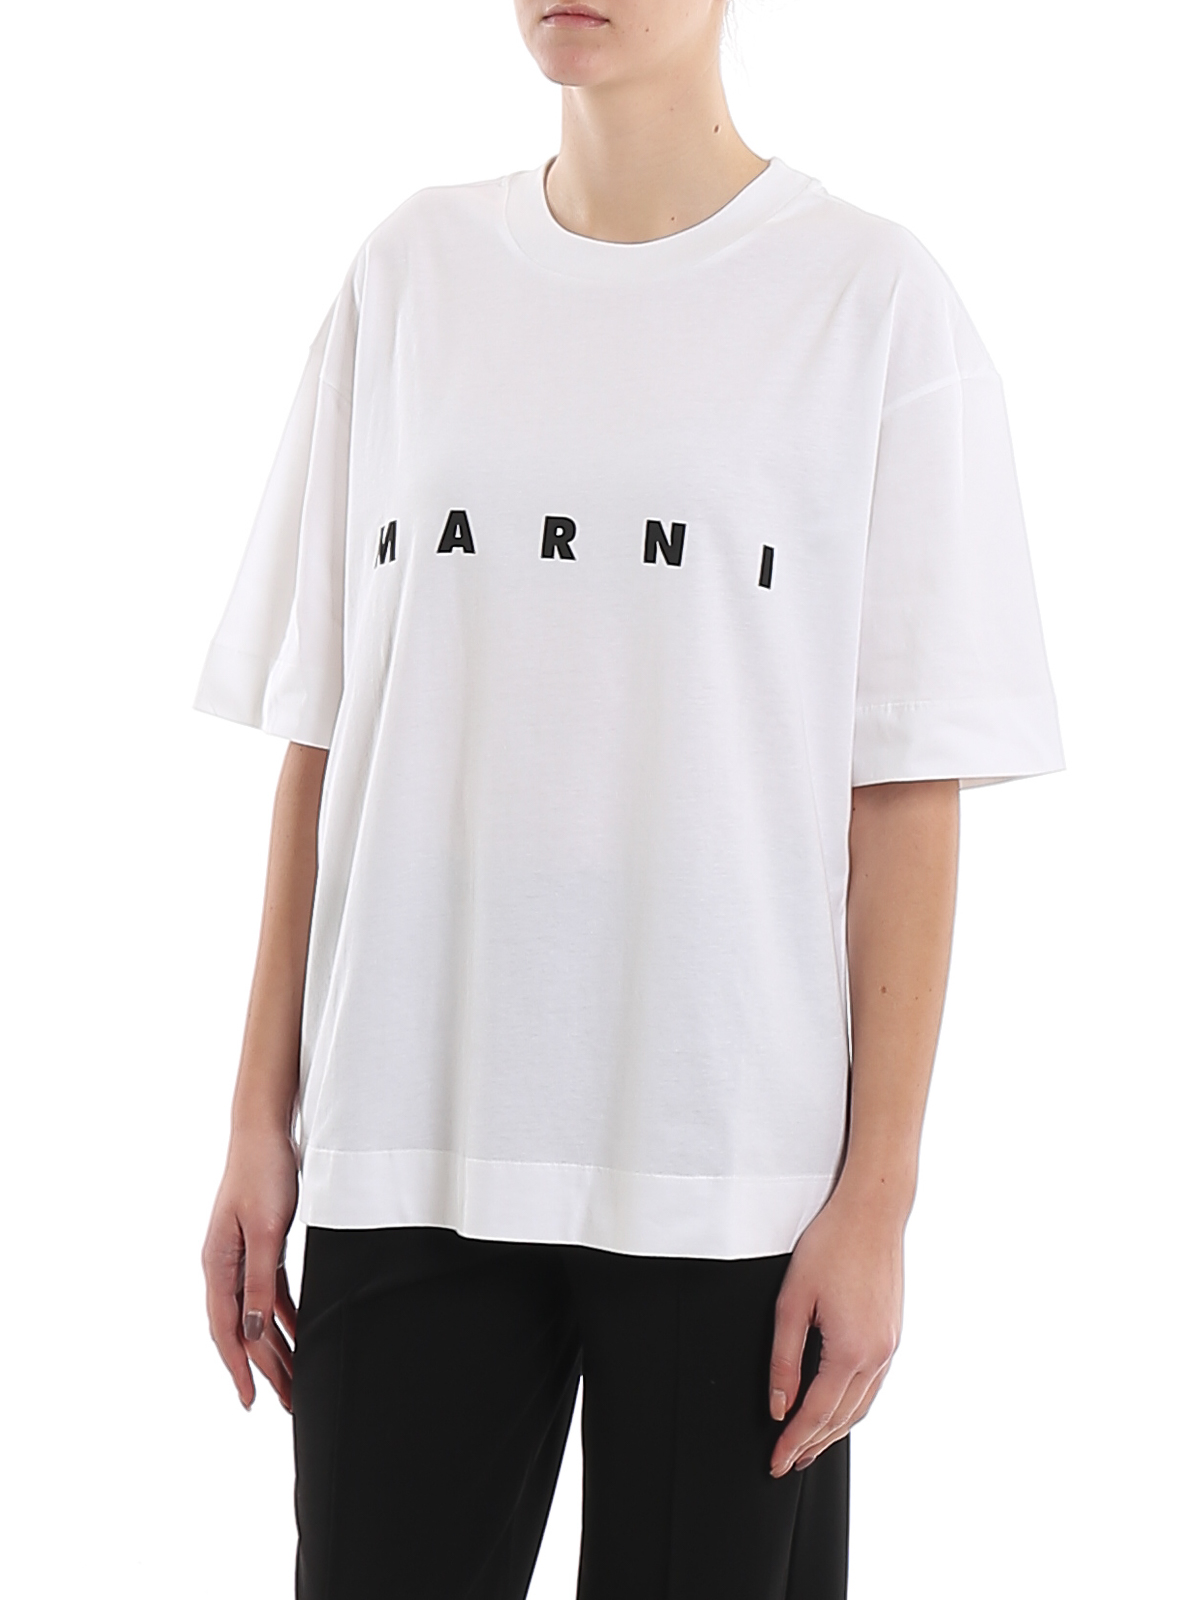 Tシャツ Marni - Tシャツ - 白 - THJET49EPBSCP89LOW01 | iKRIX.com